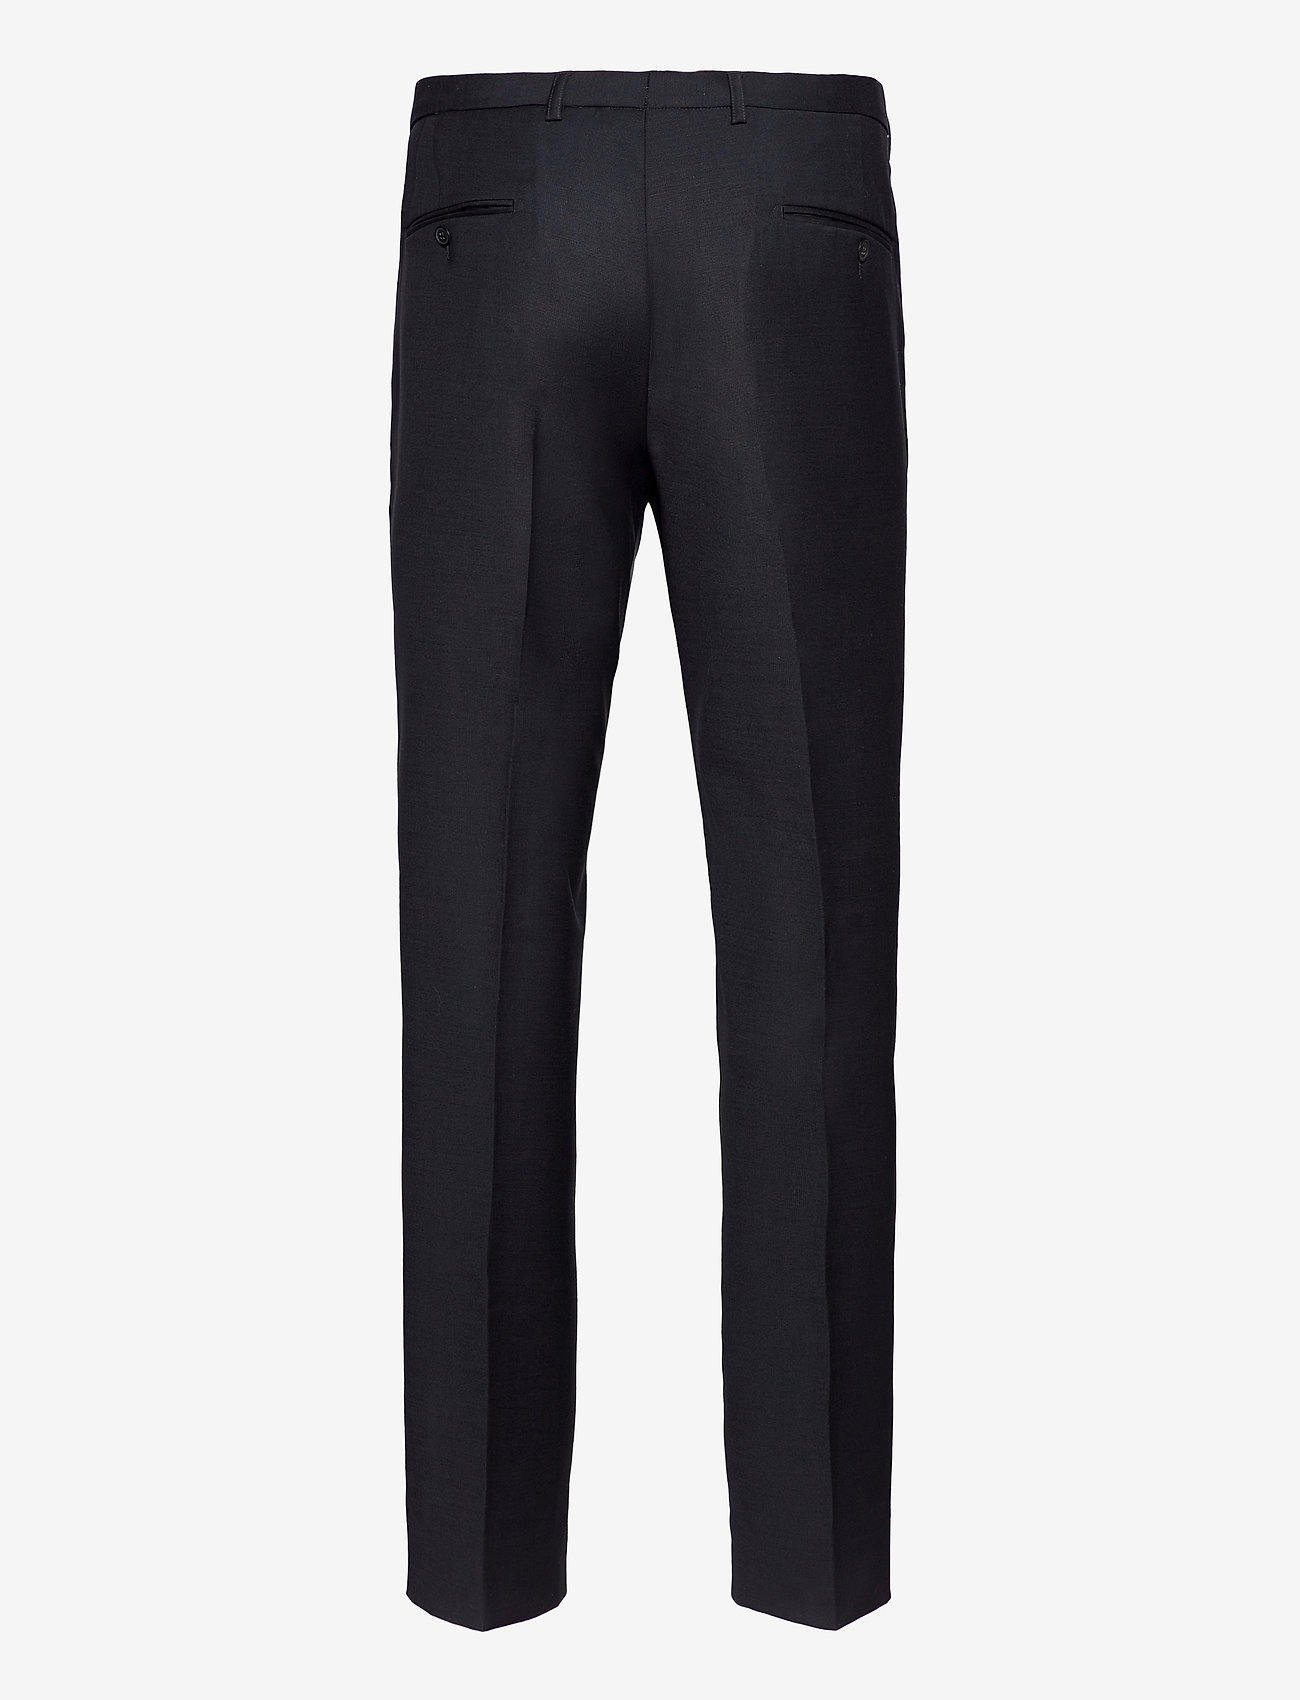 Bruun & Stengade - BS Hardmann - suit trousers - black - 1